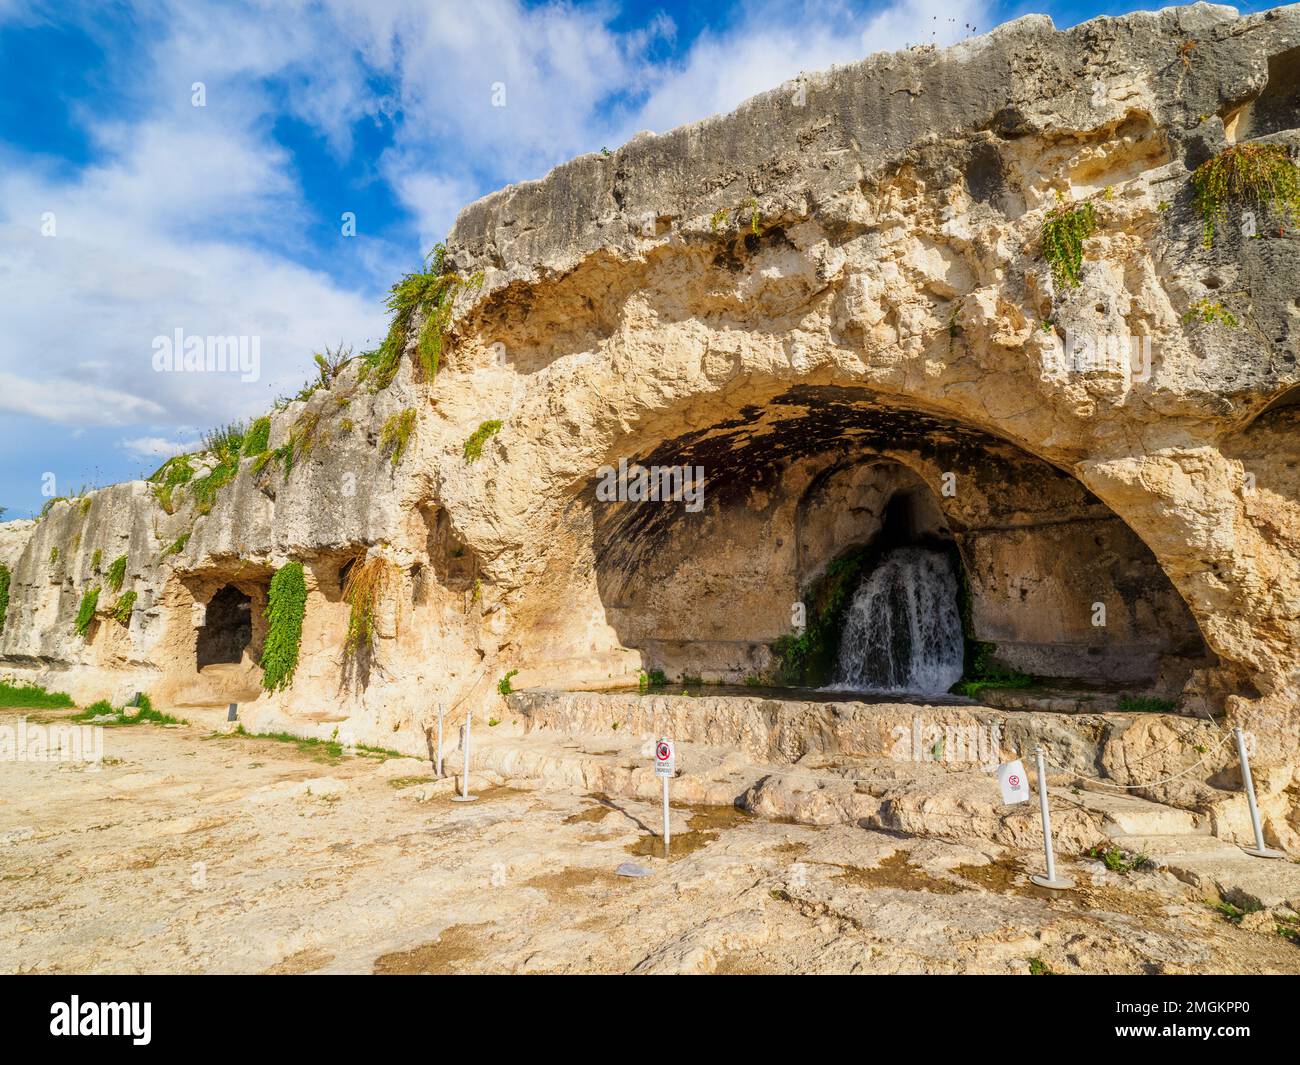 Die Grotta del Ninfeo ist eine künstliche Höhle im Felsen des Temenitenhügels (benannt nach den griechischen Temenos, „bewachsenes Viertel“) - Neapolis Archäologischer Park - Syrakus, Sizilien, Italien Stockfoto